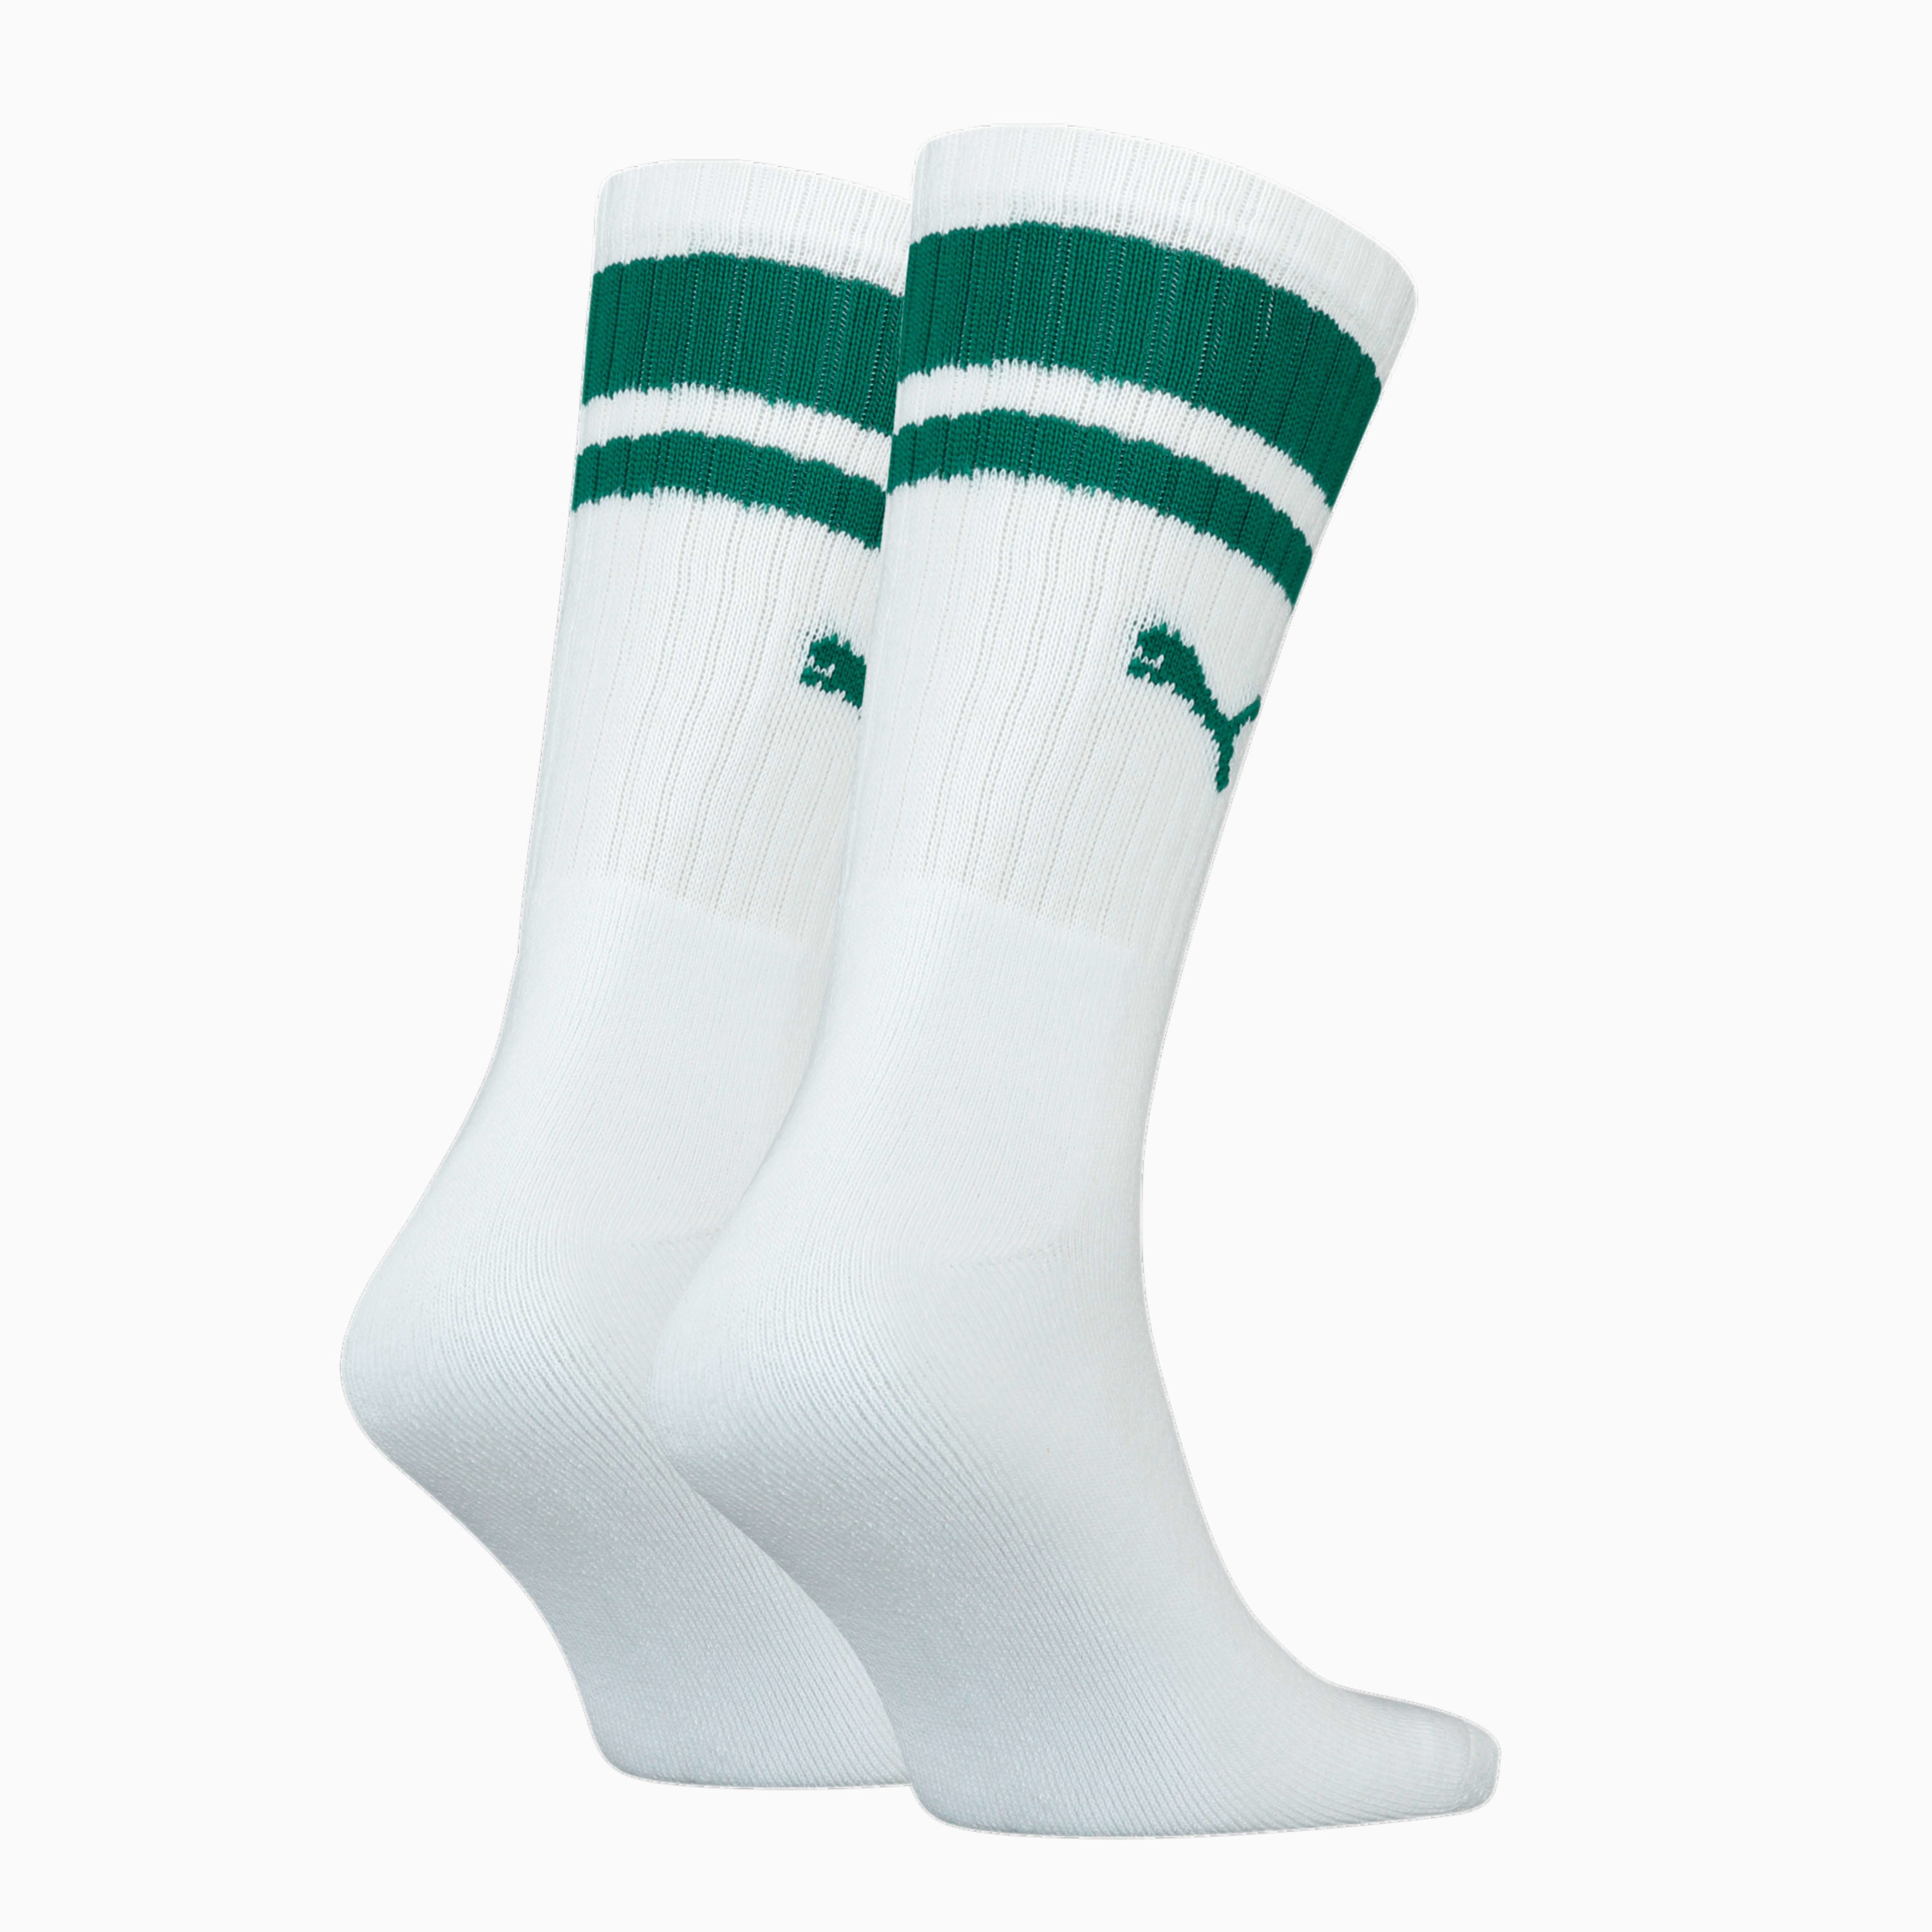 Set von 2 Paar traditionellen Sneaker Streifen grünen Socken mit